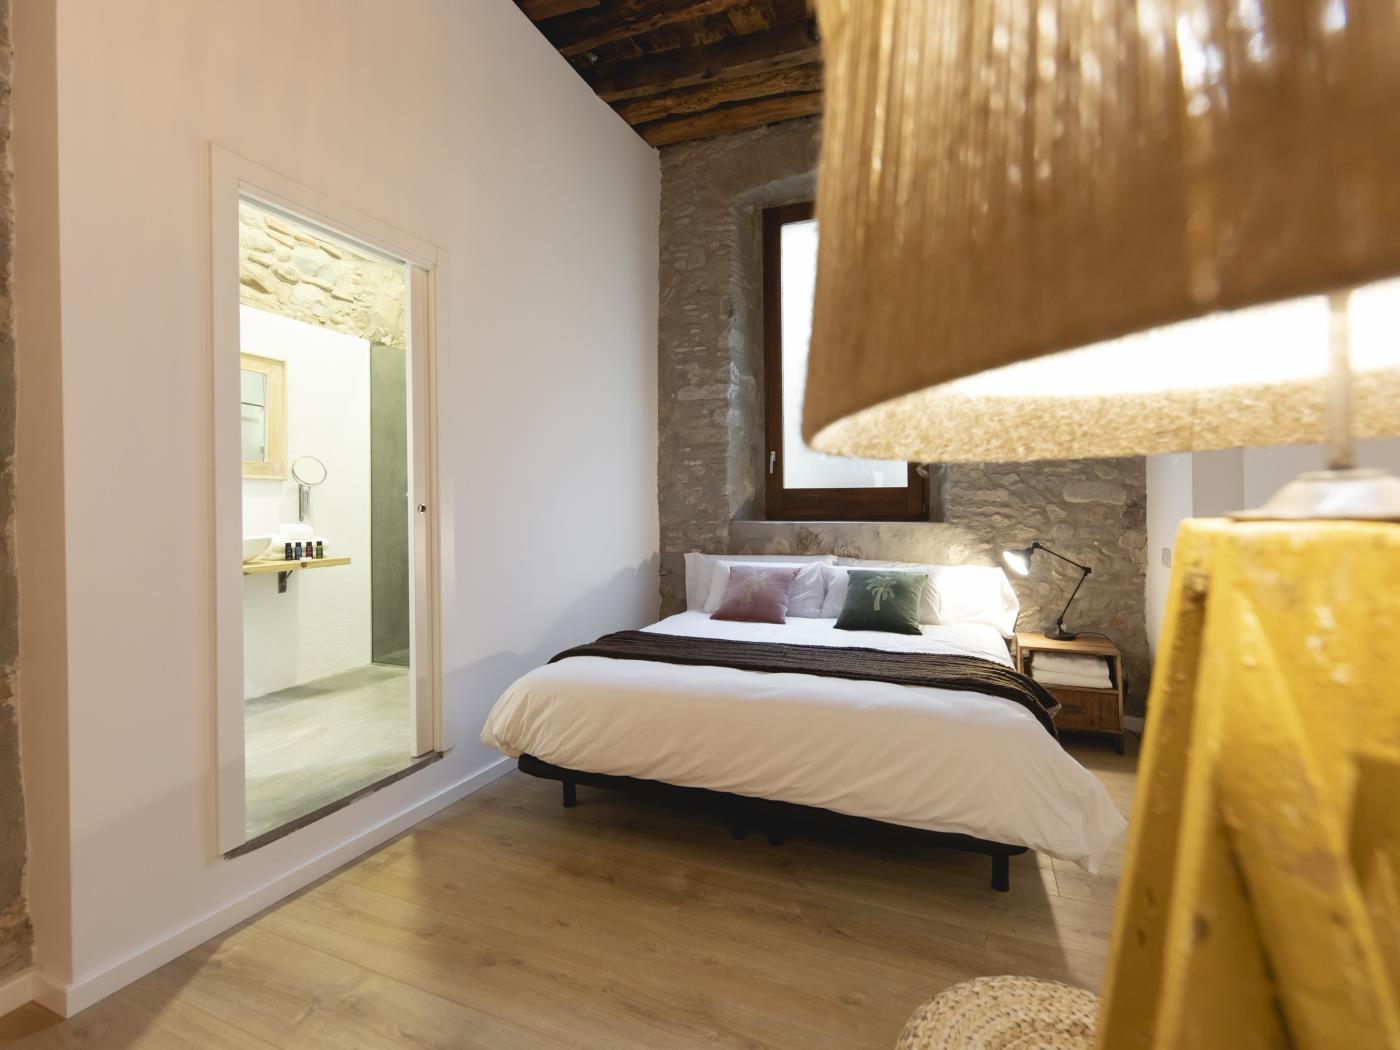 Bravissimo Bali, hermoso piso de 2 dormitorios en Girona